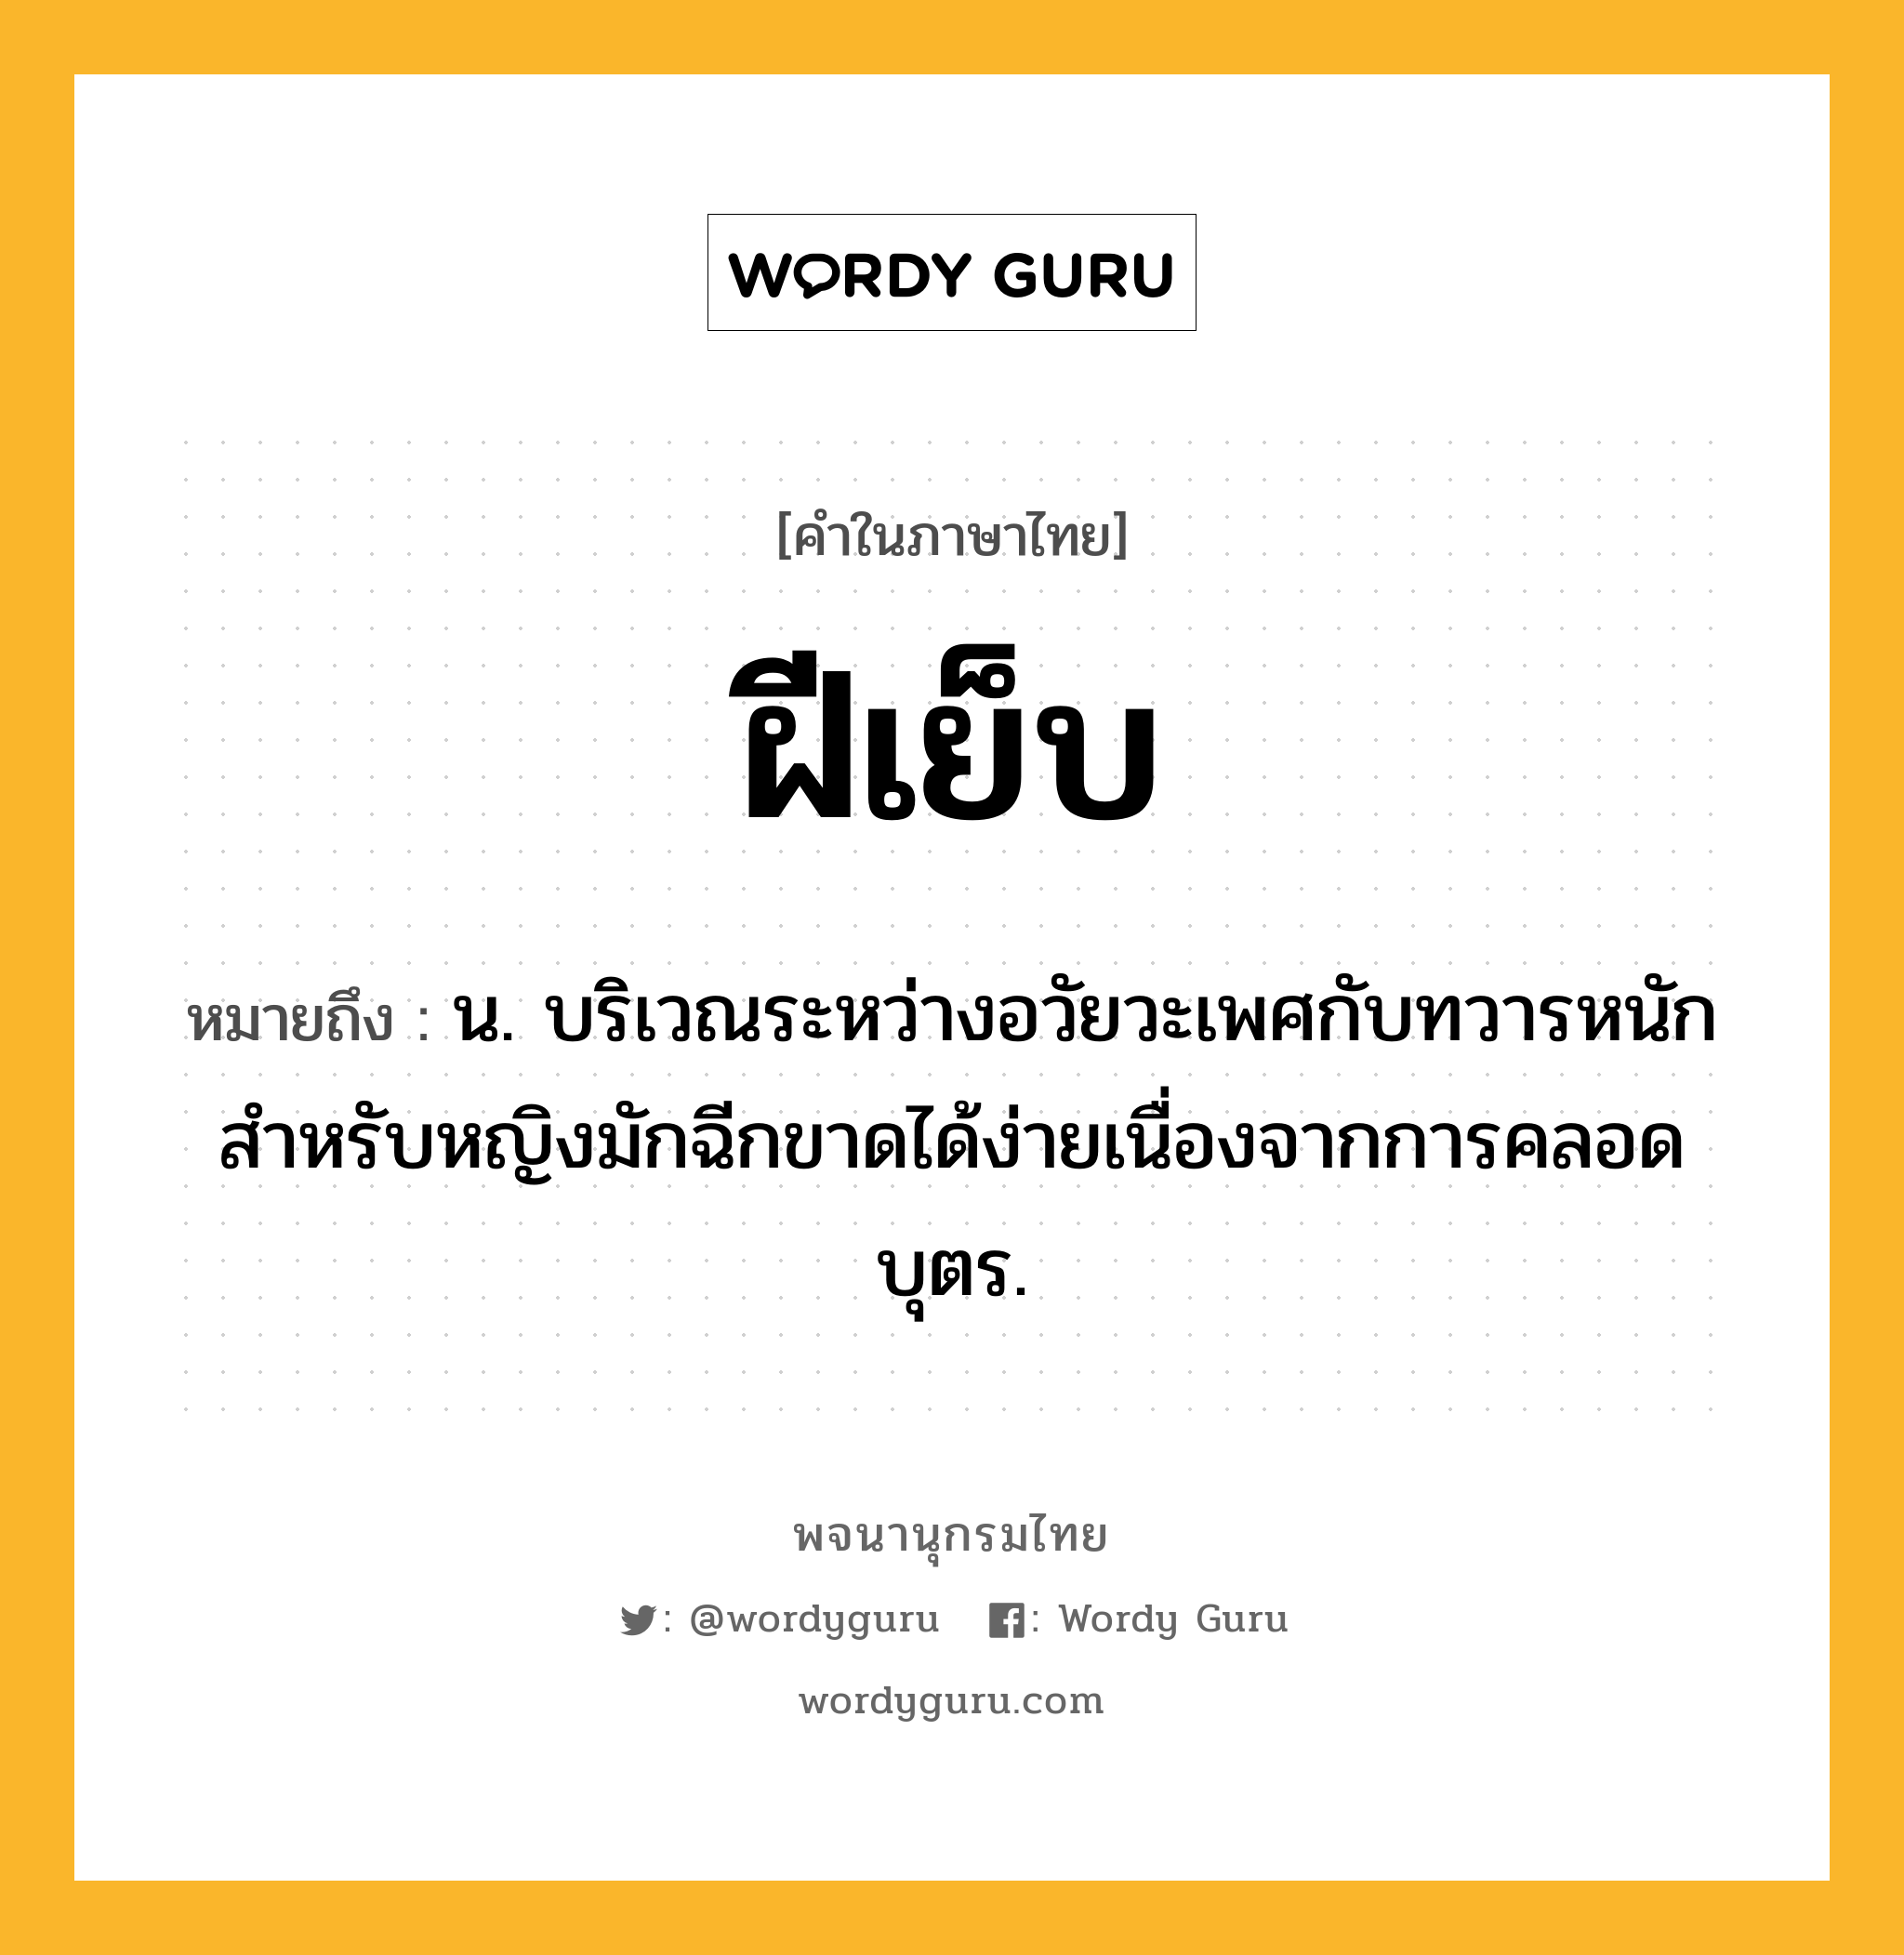 ฝีเย็บ ความหมาย หมายถึงอะไร?, คำในภาษาไทย ฝีเย็บ หมายถึง น. บริเวณระหว่างอวัยวะเพศกับทวารหนัก สําหรับหญิงมักฉีกขาดได้ง่ายเนื่องจากการคลอดบุตร.